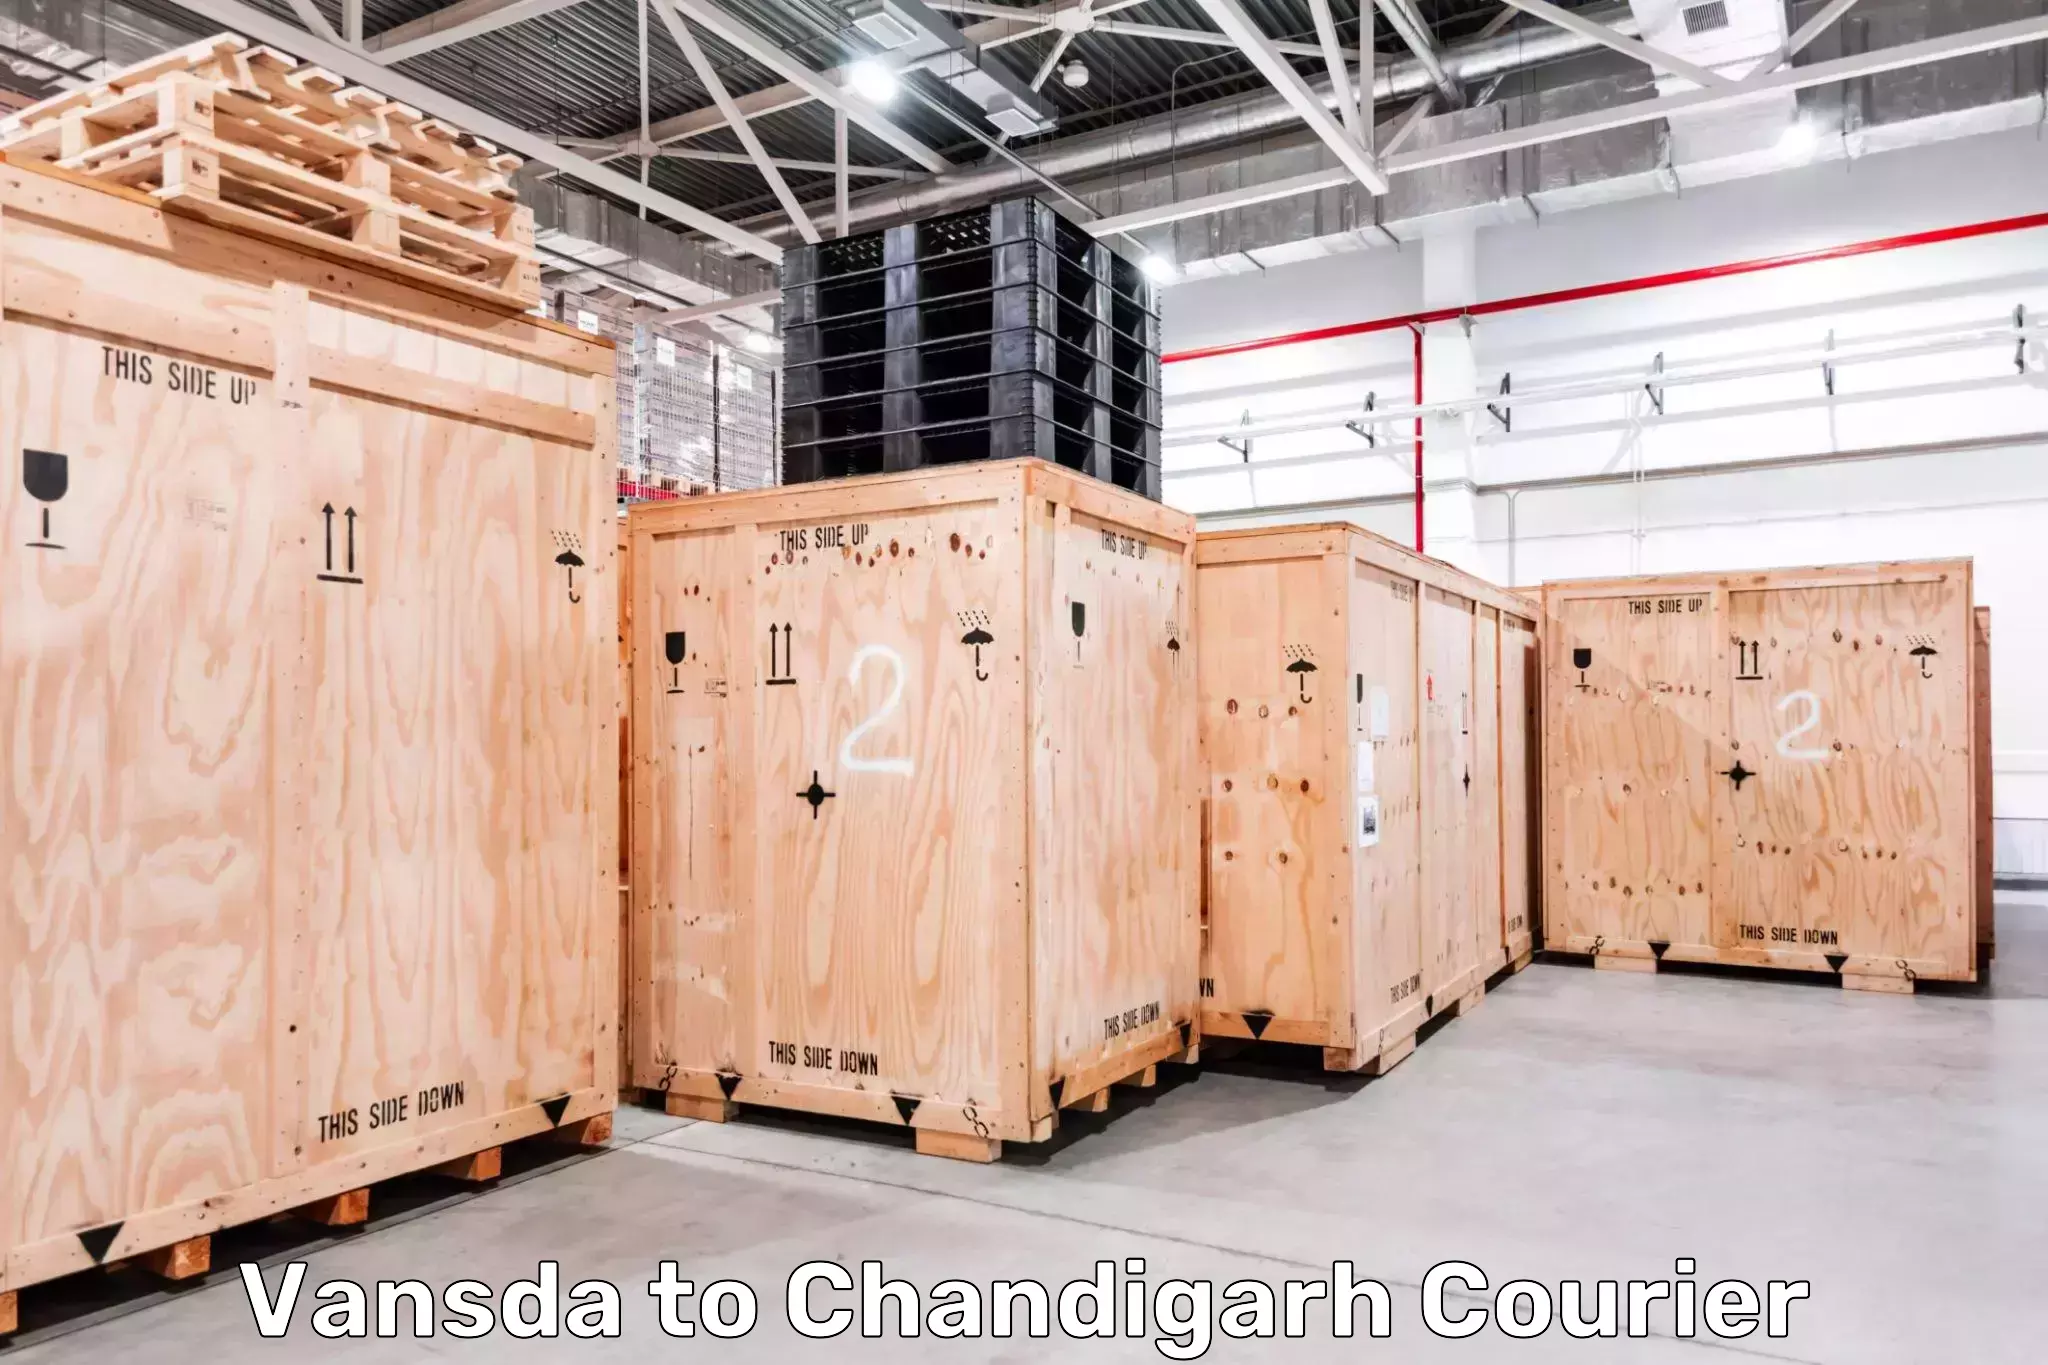 Cargo courier service Vansda to Chandigarh